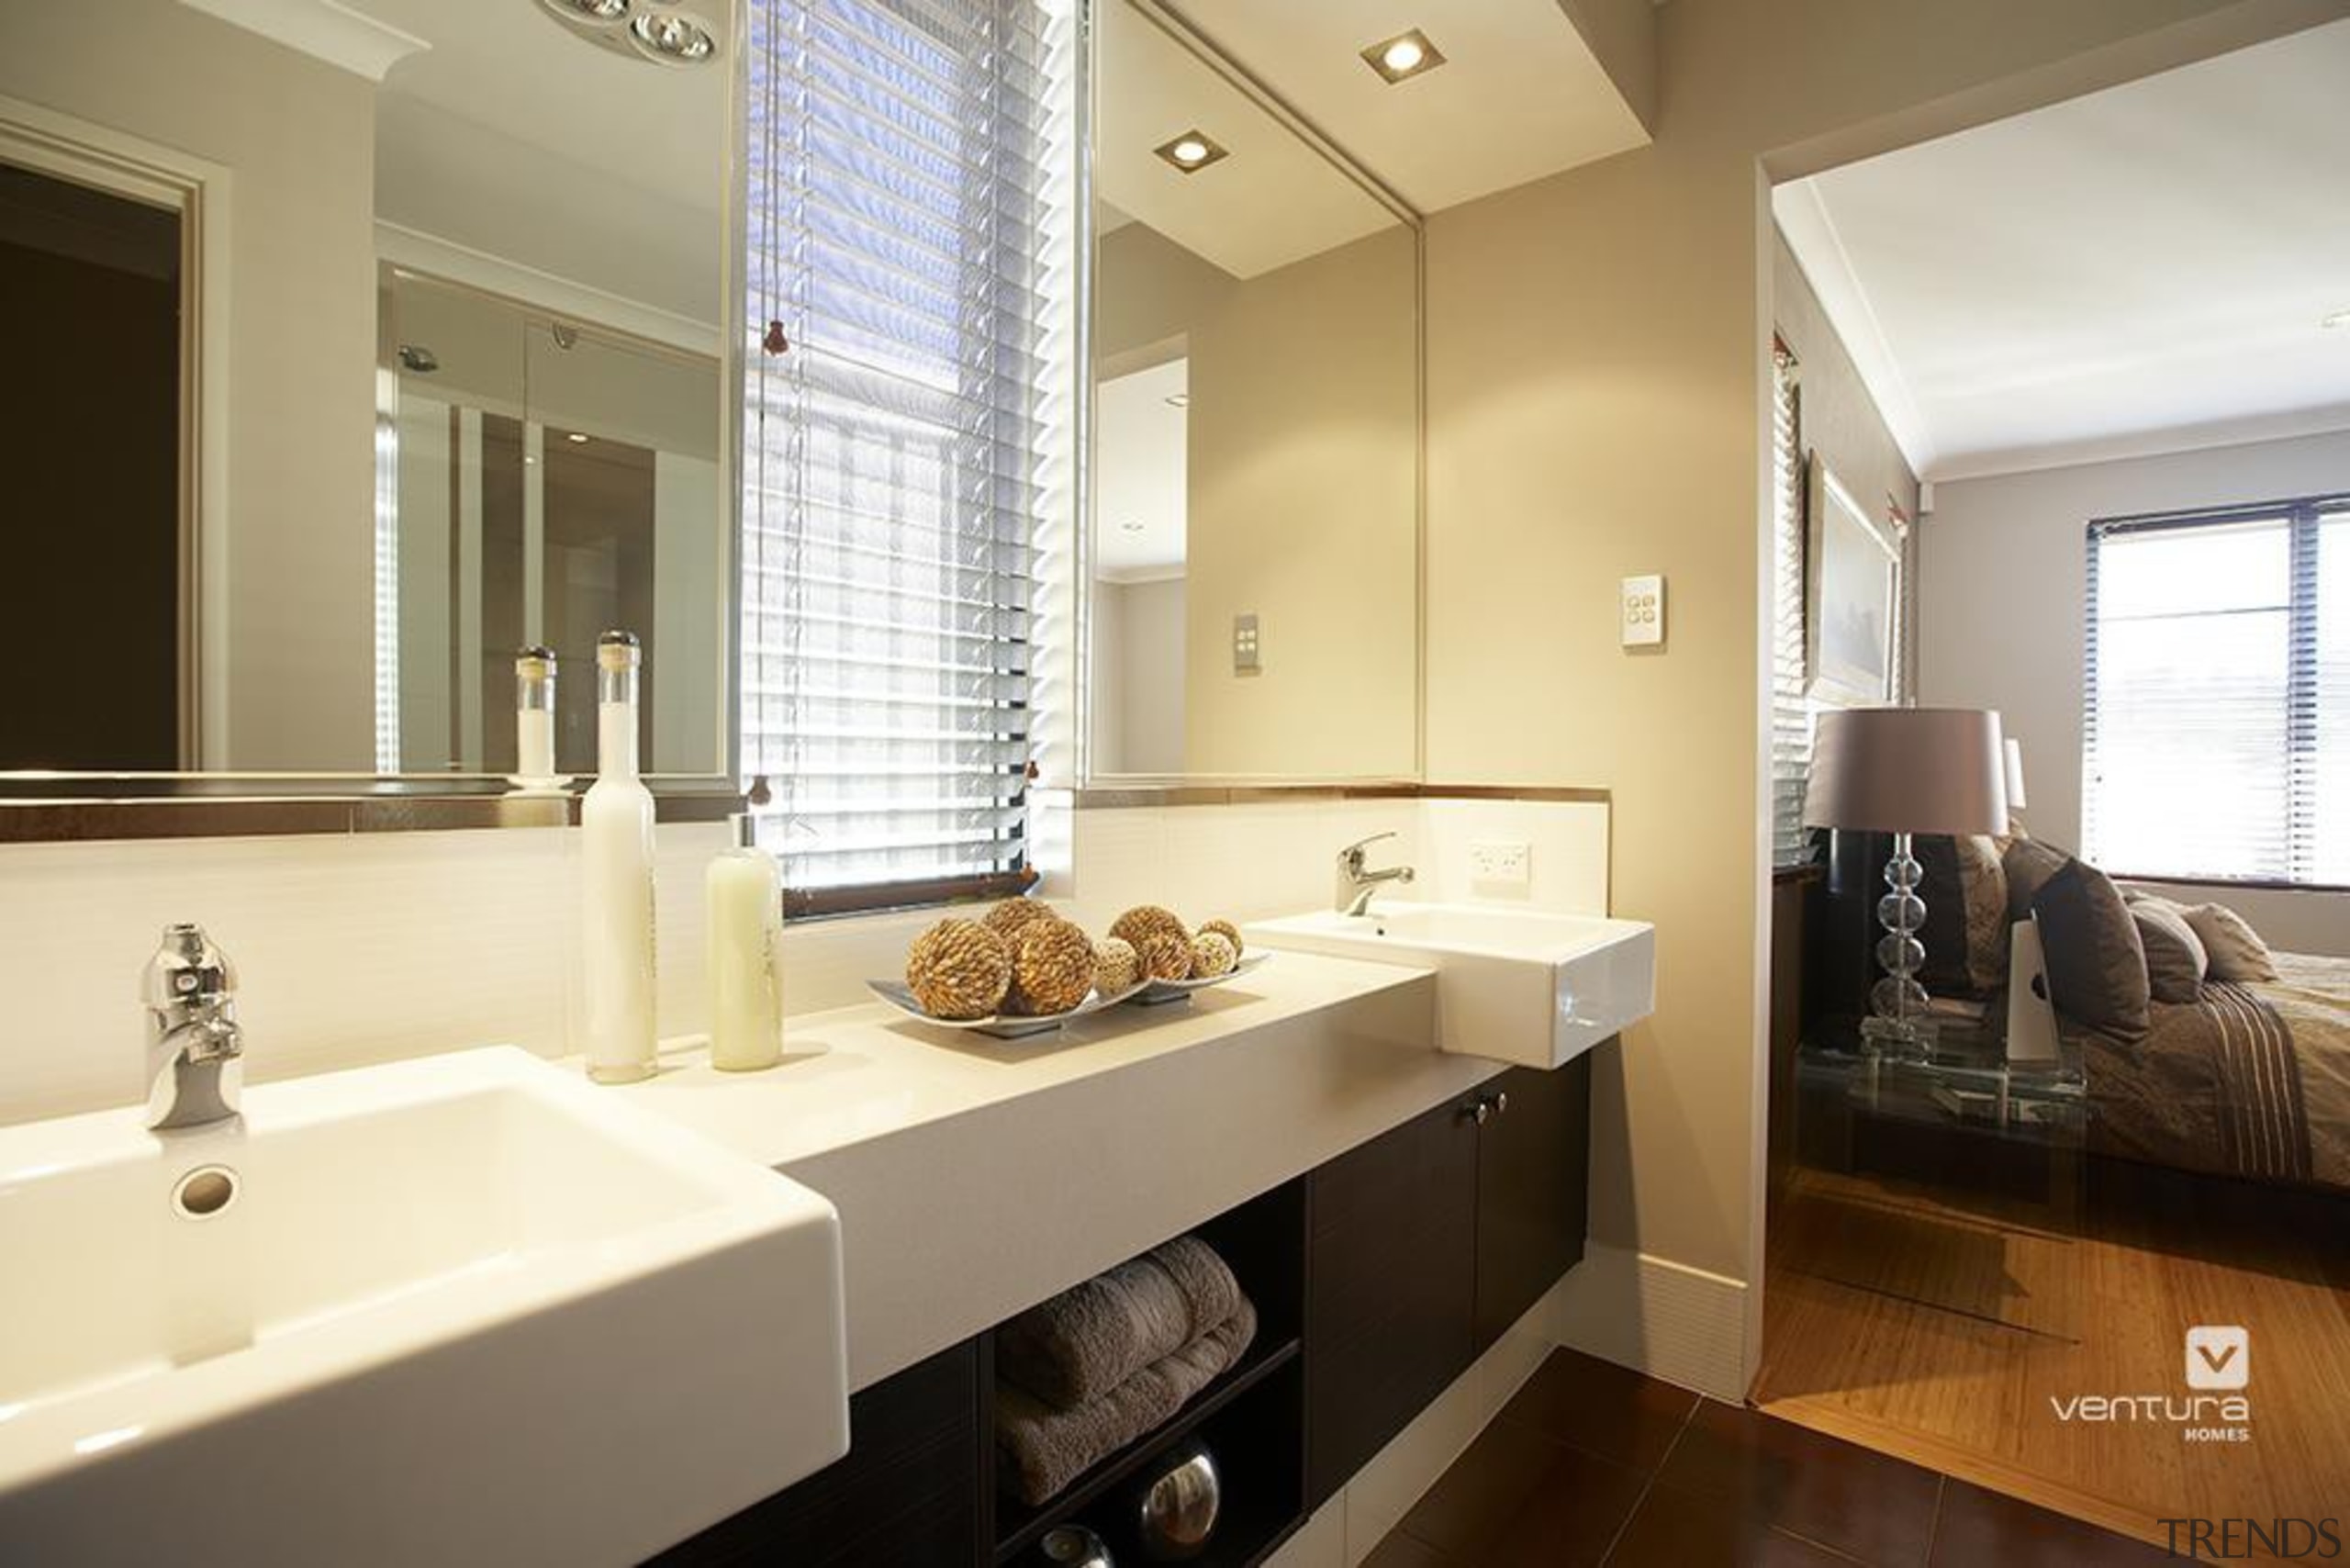 Ensuite design. - The Connoisseur Display Home - bathroom, home, interior design, real estate, room, sink, brown